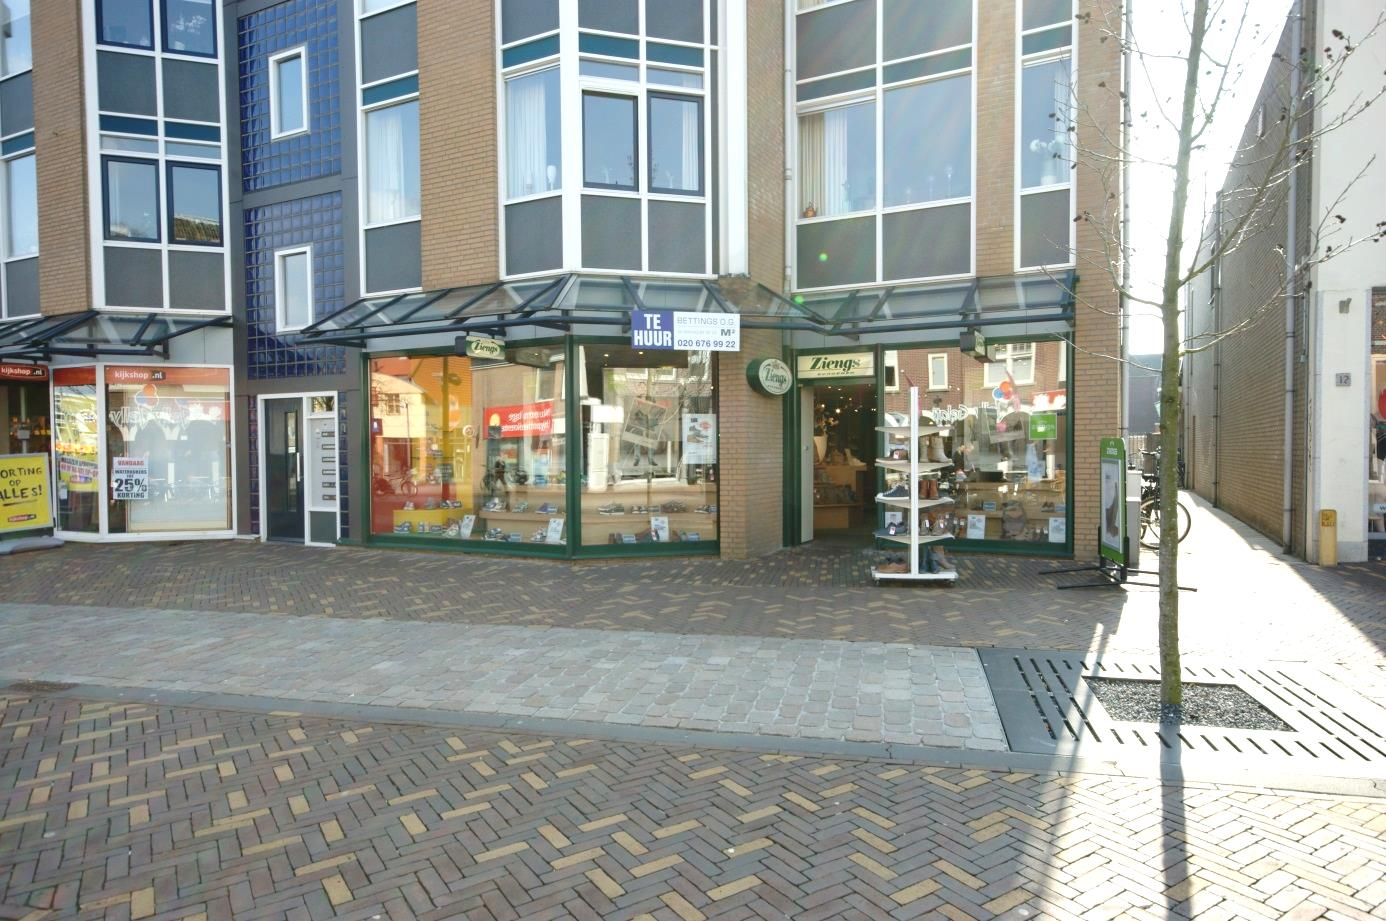 Te Huur Hoogstraat 14 te Veenendaal Representatieve winkelruimte gelegen in Veenendaal Centrum. ca. 258 m² op de begane grond.